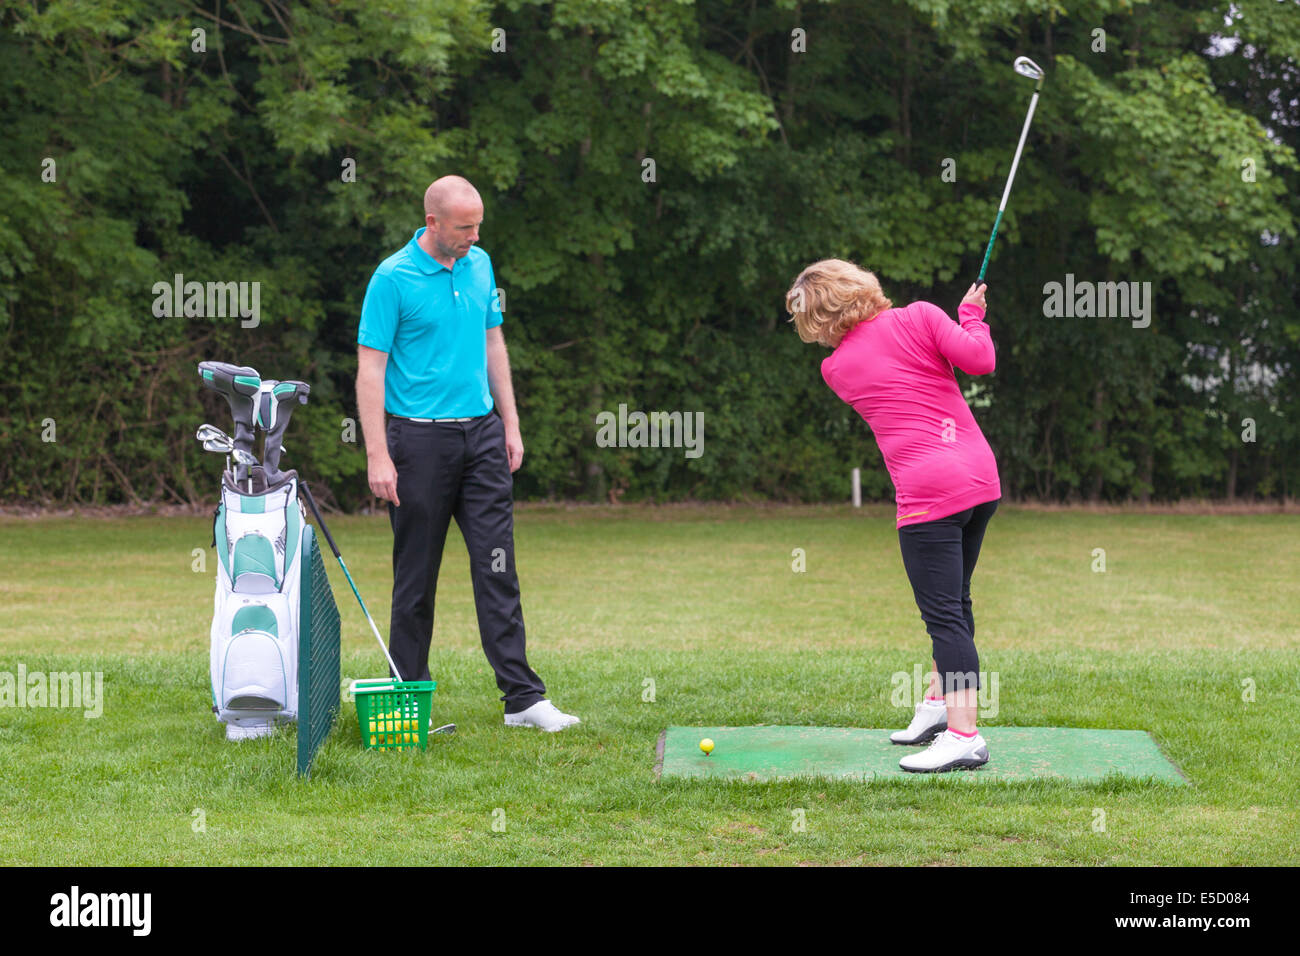 Un golfeur dame est enseigné à jouer au golf par un Pro sur une pratique d'entraînement. Banque D'Images